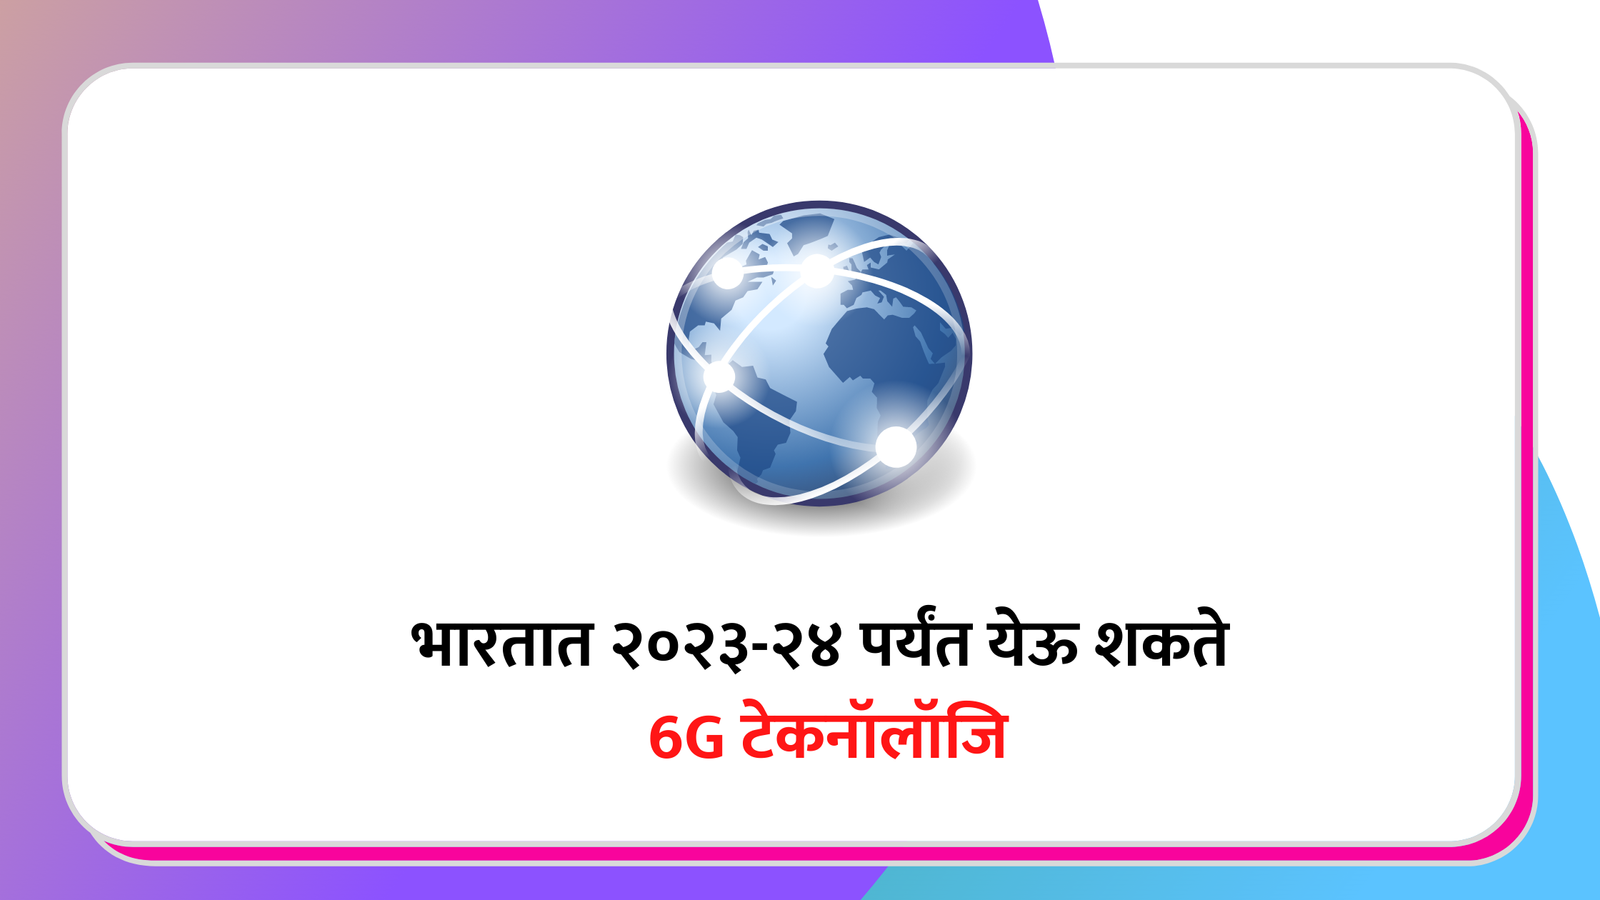 भारतात २०२३-२४ पर्यंत येऊ शकते 6G टेकनॉलॉजि